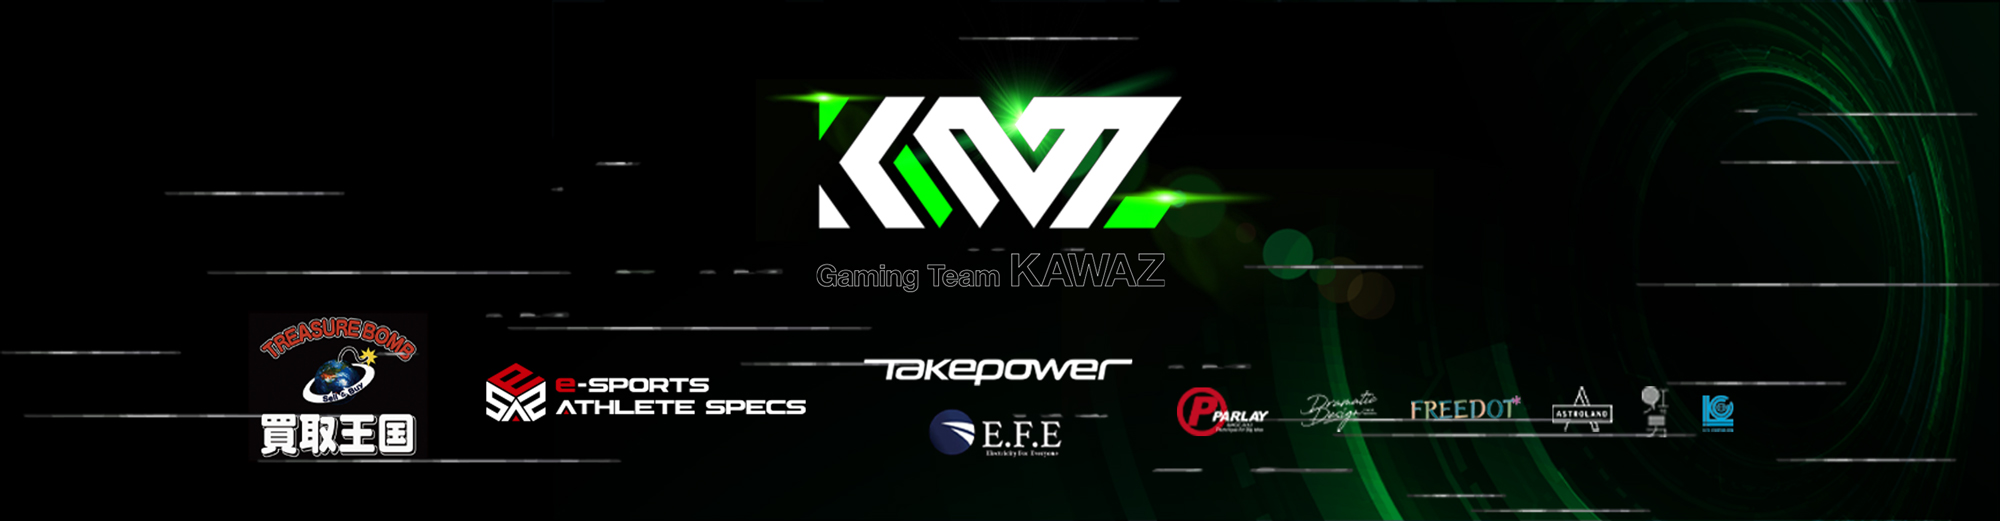 Gaming Team ”KAWAZ”